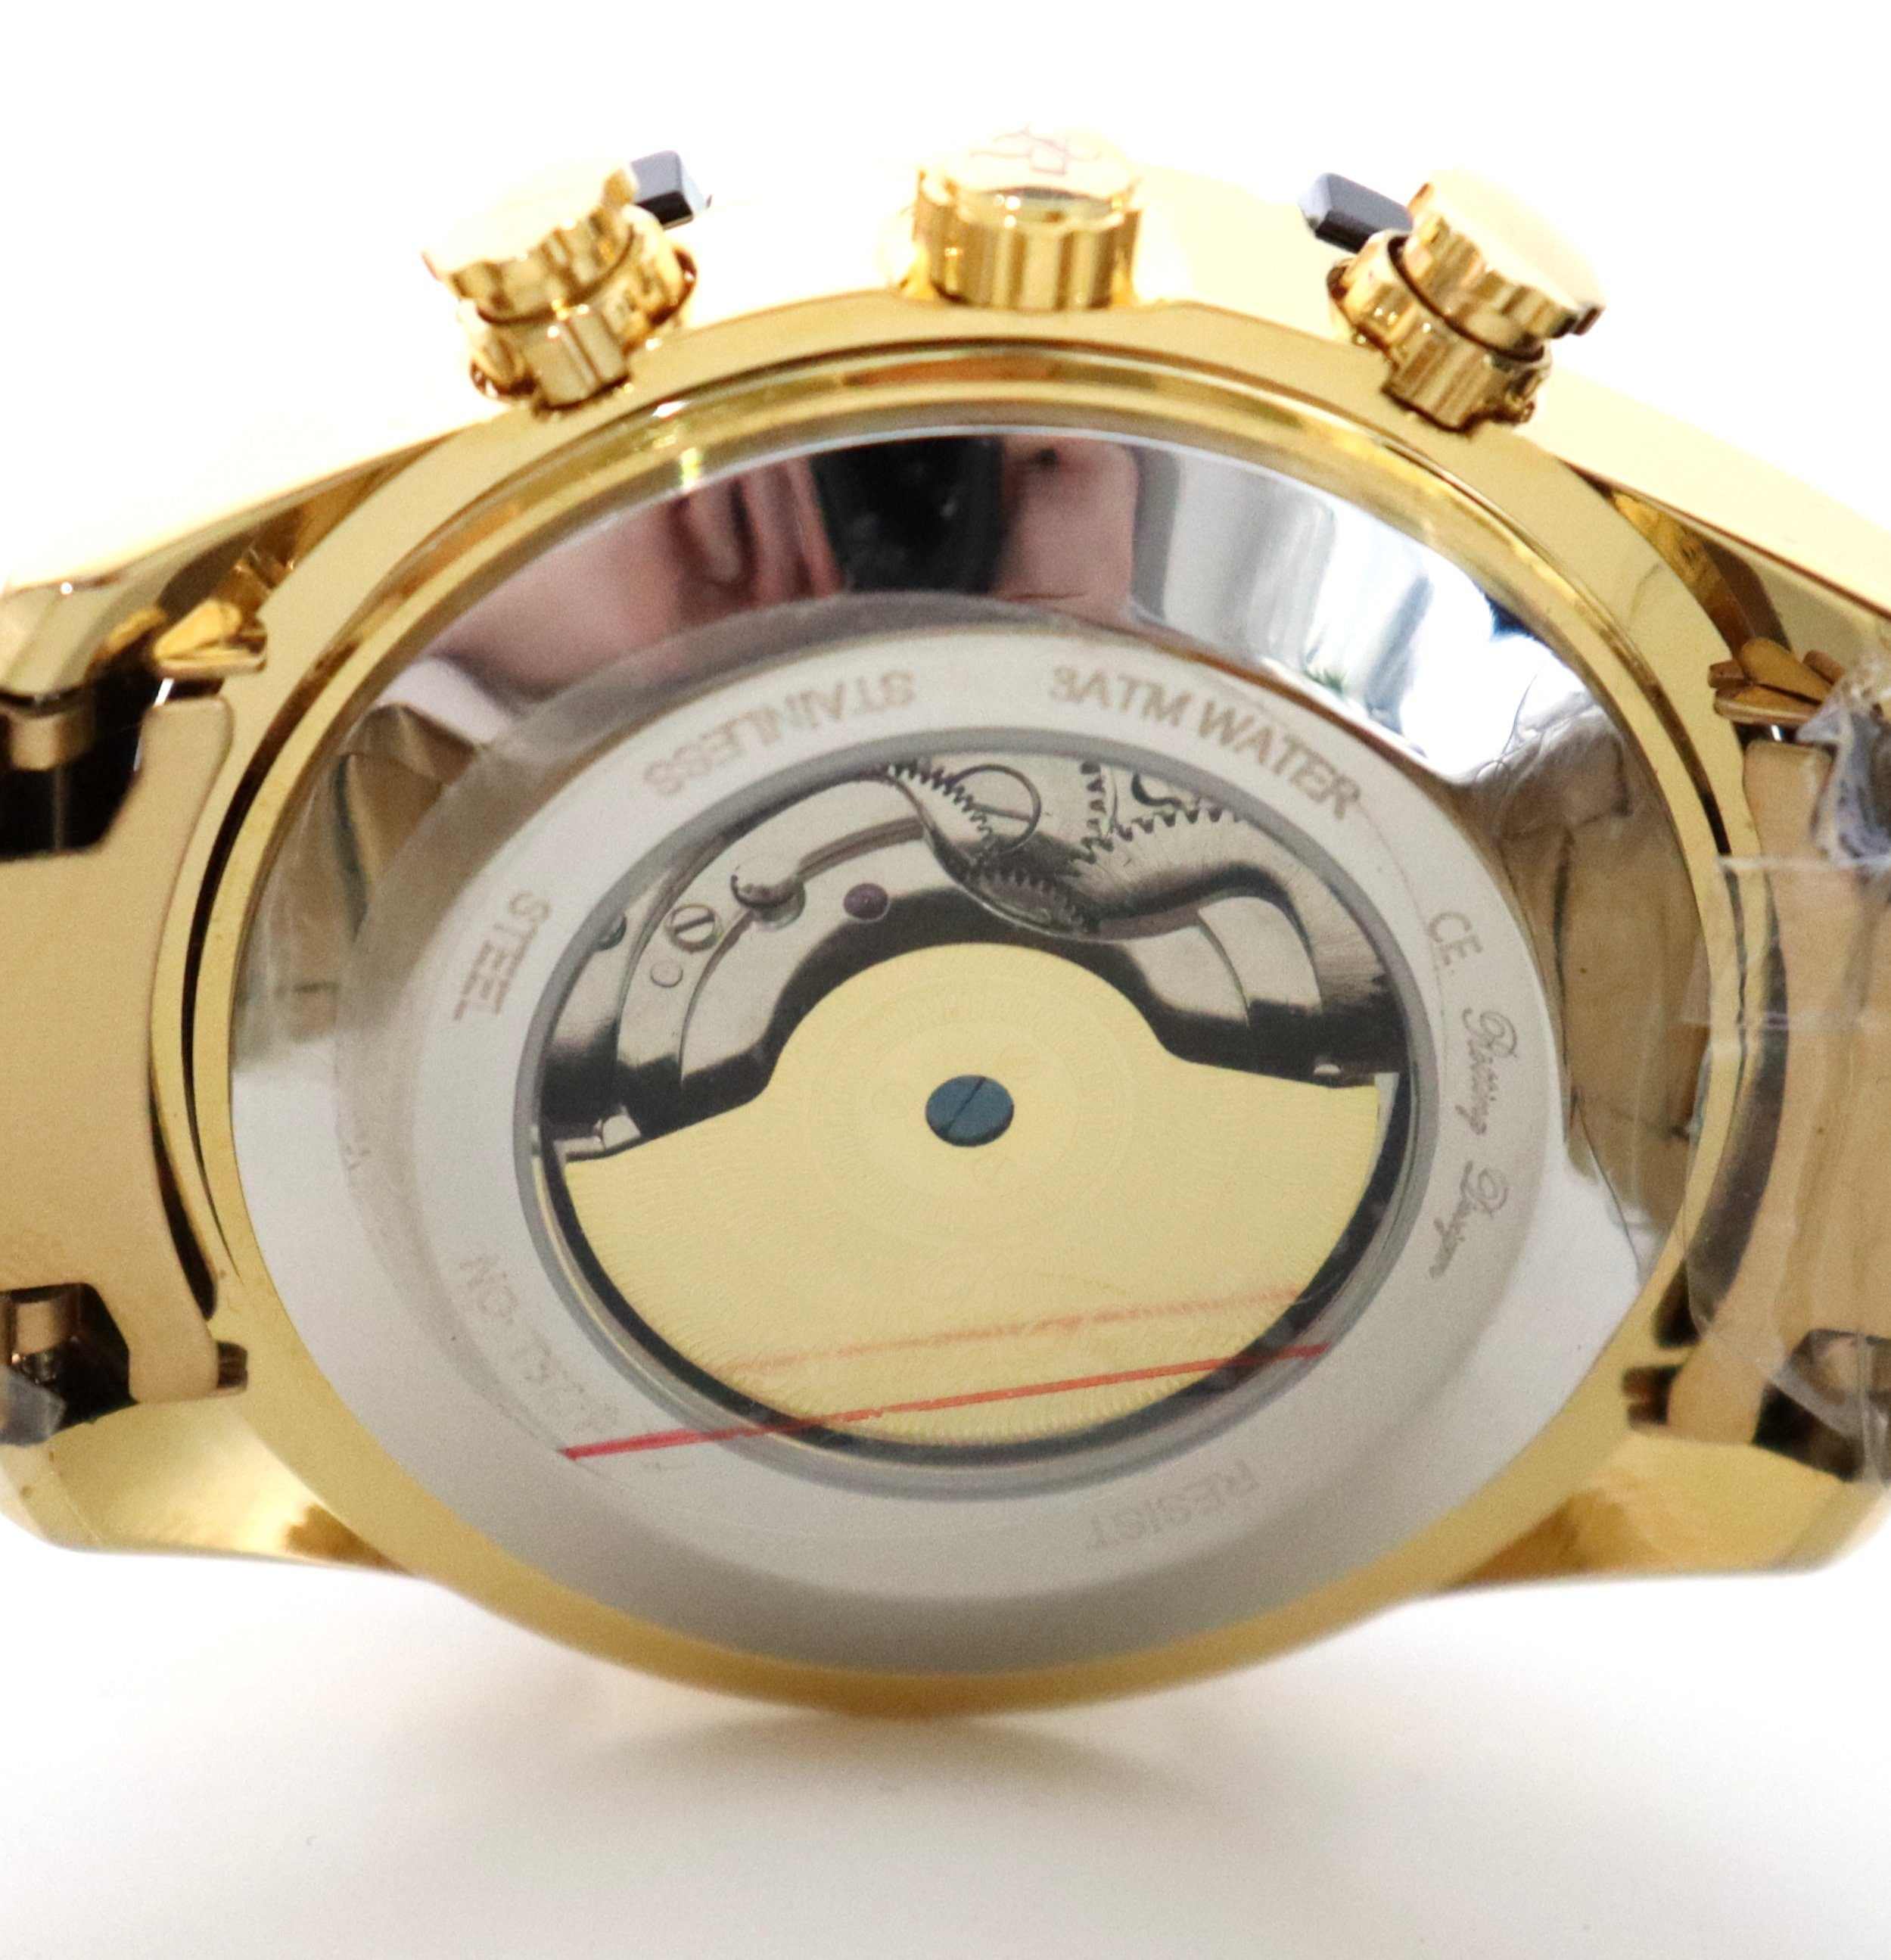 Rötting Ziffernblatt cm Herrenuhr hochwertige Automatikuhr Armbandumfang Design 18 bis 24 Automatikuhr Uhrenholzbox goldfarbenes wählbar Datumsanzeige